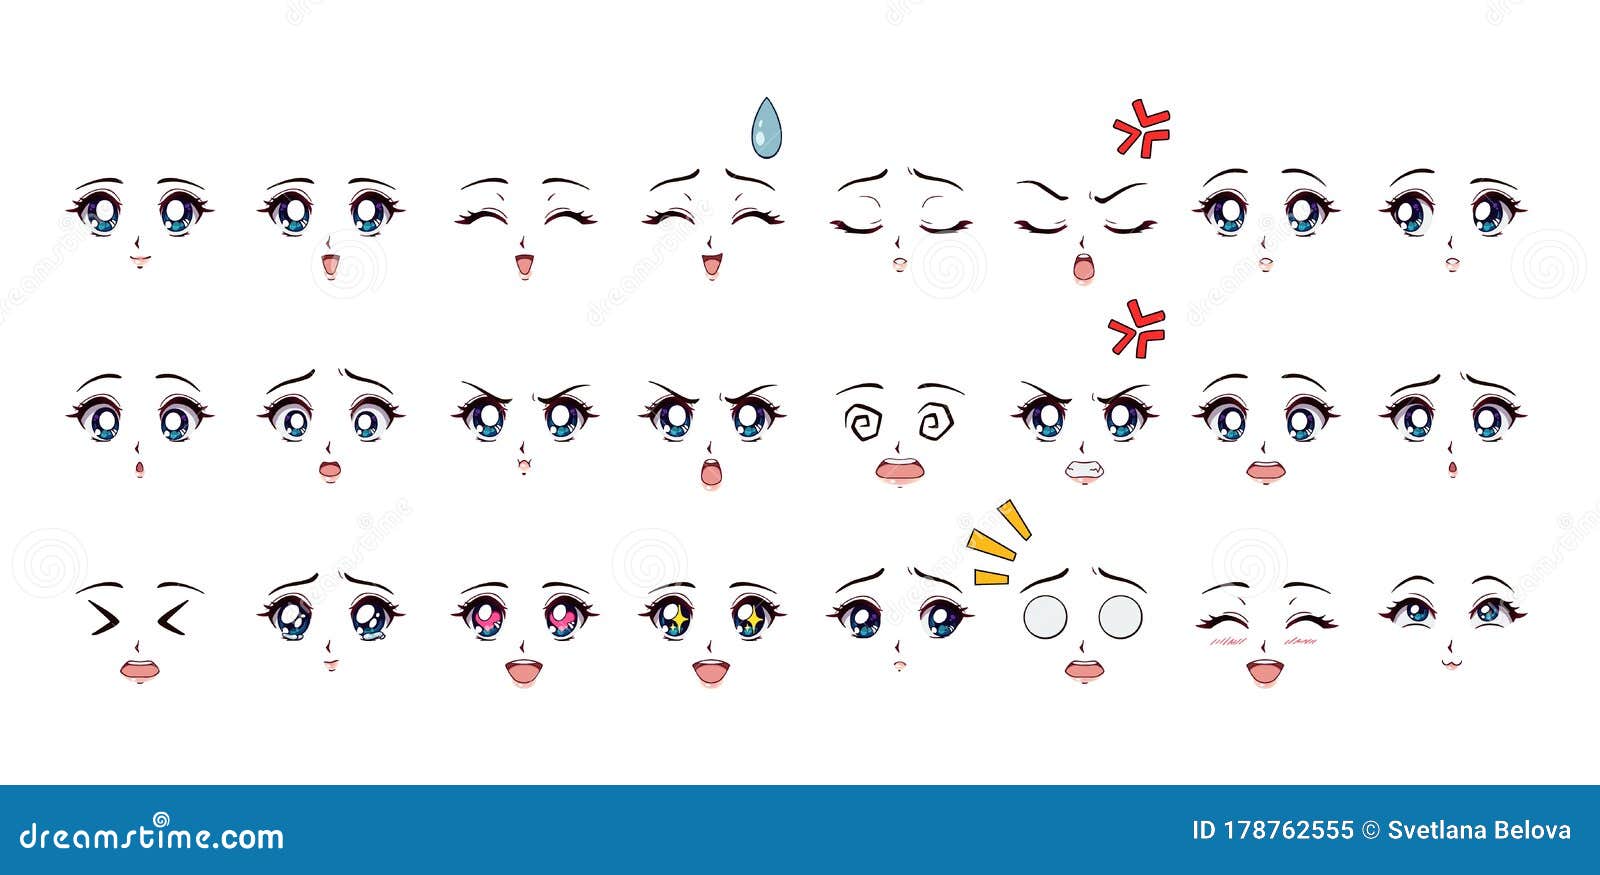 Emotions Blue Eyes Of Anime Manga Girls Stock Illustration